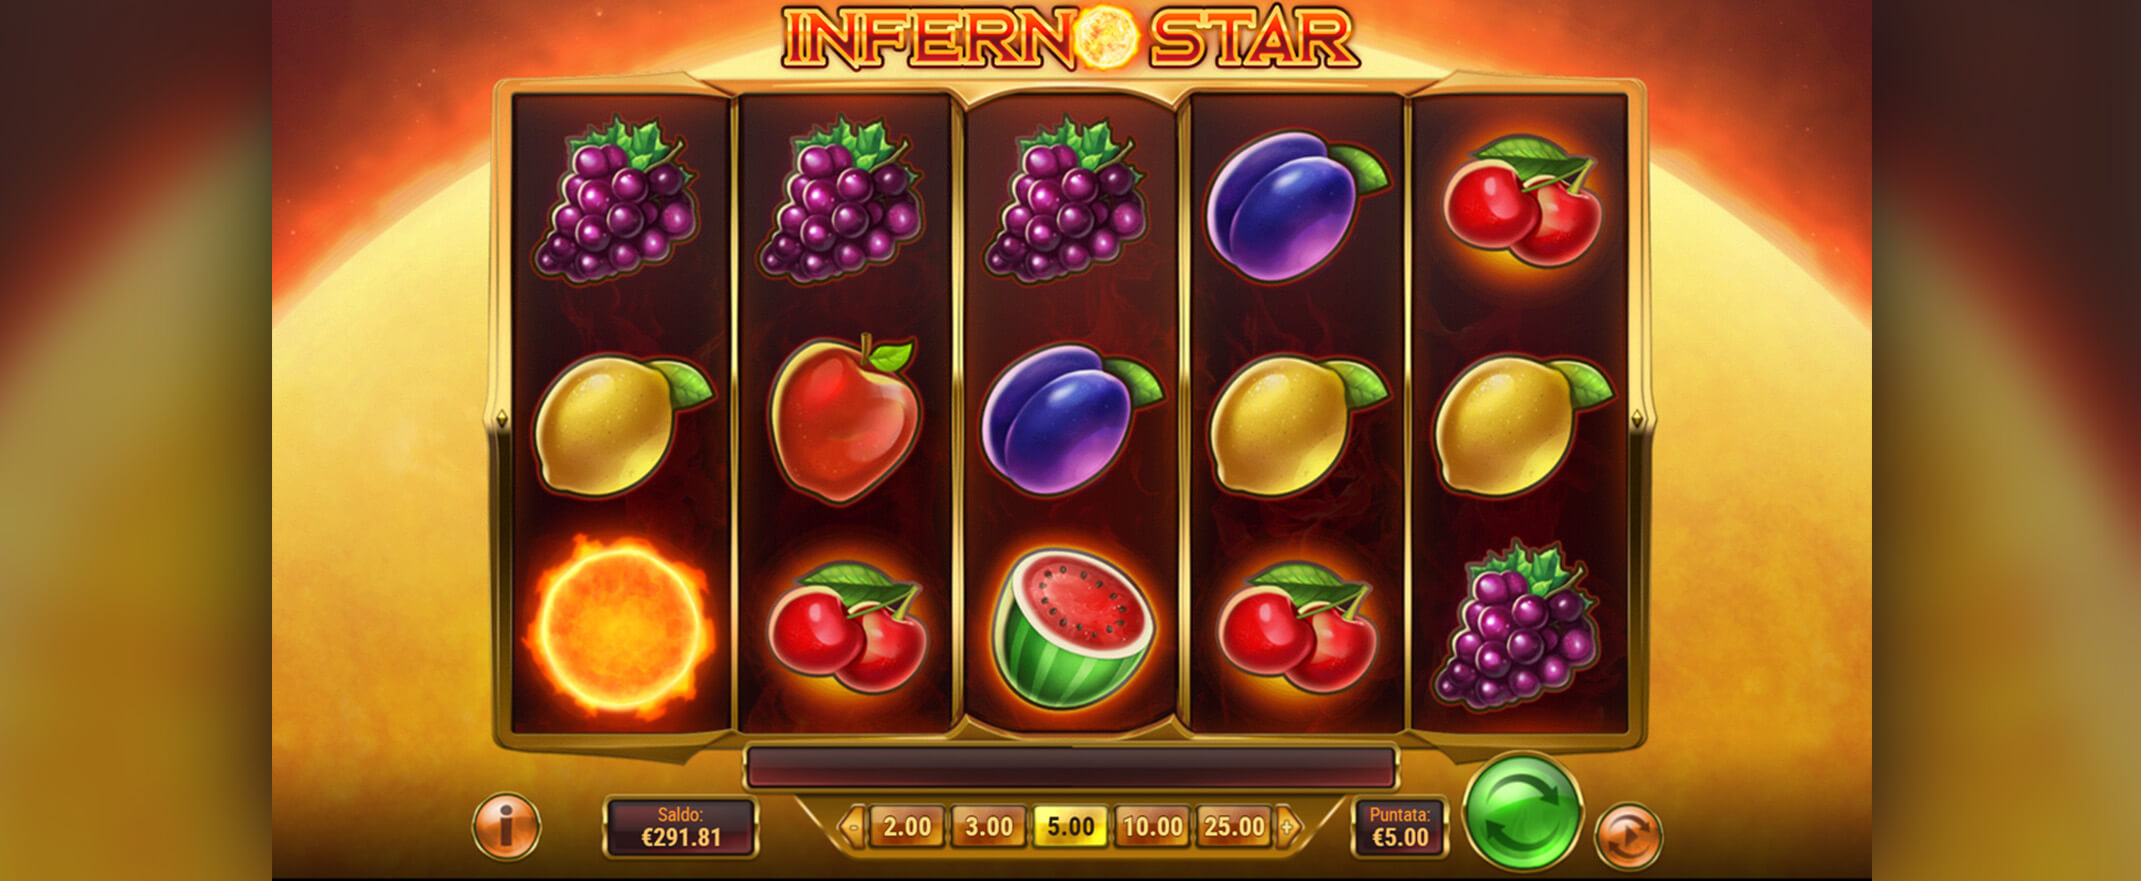 Inferno Star Spielautomat von Play'n Go